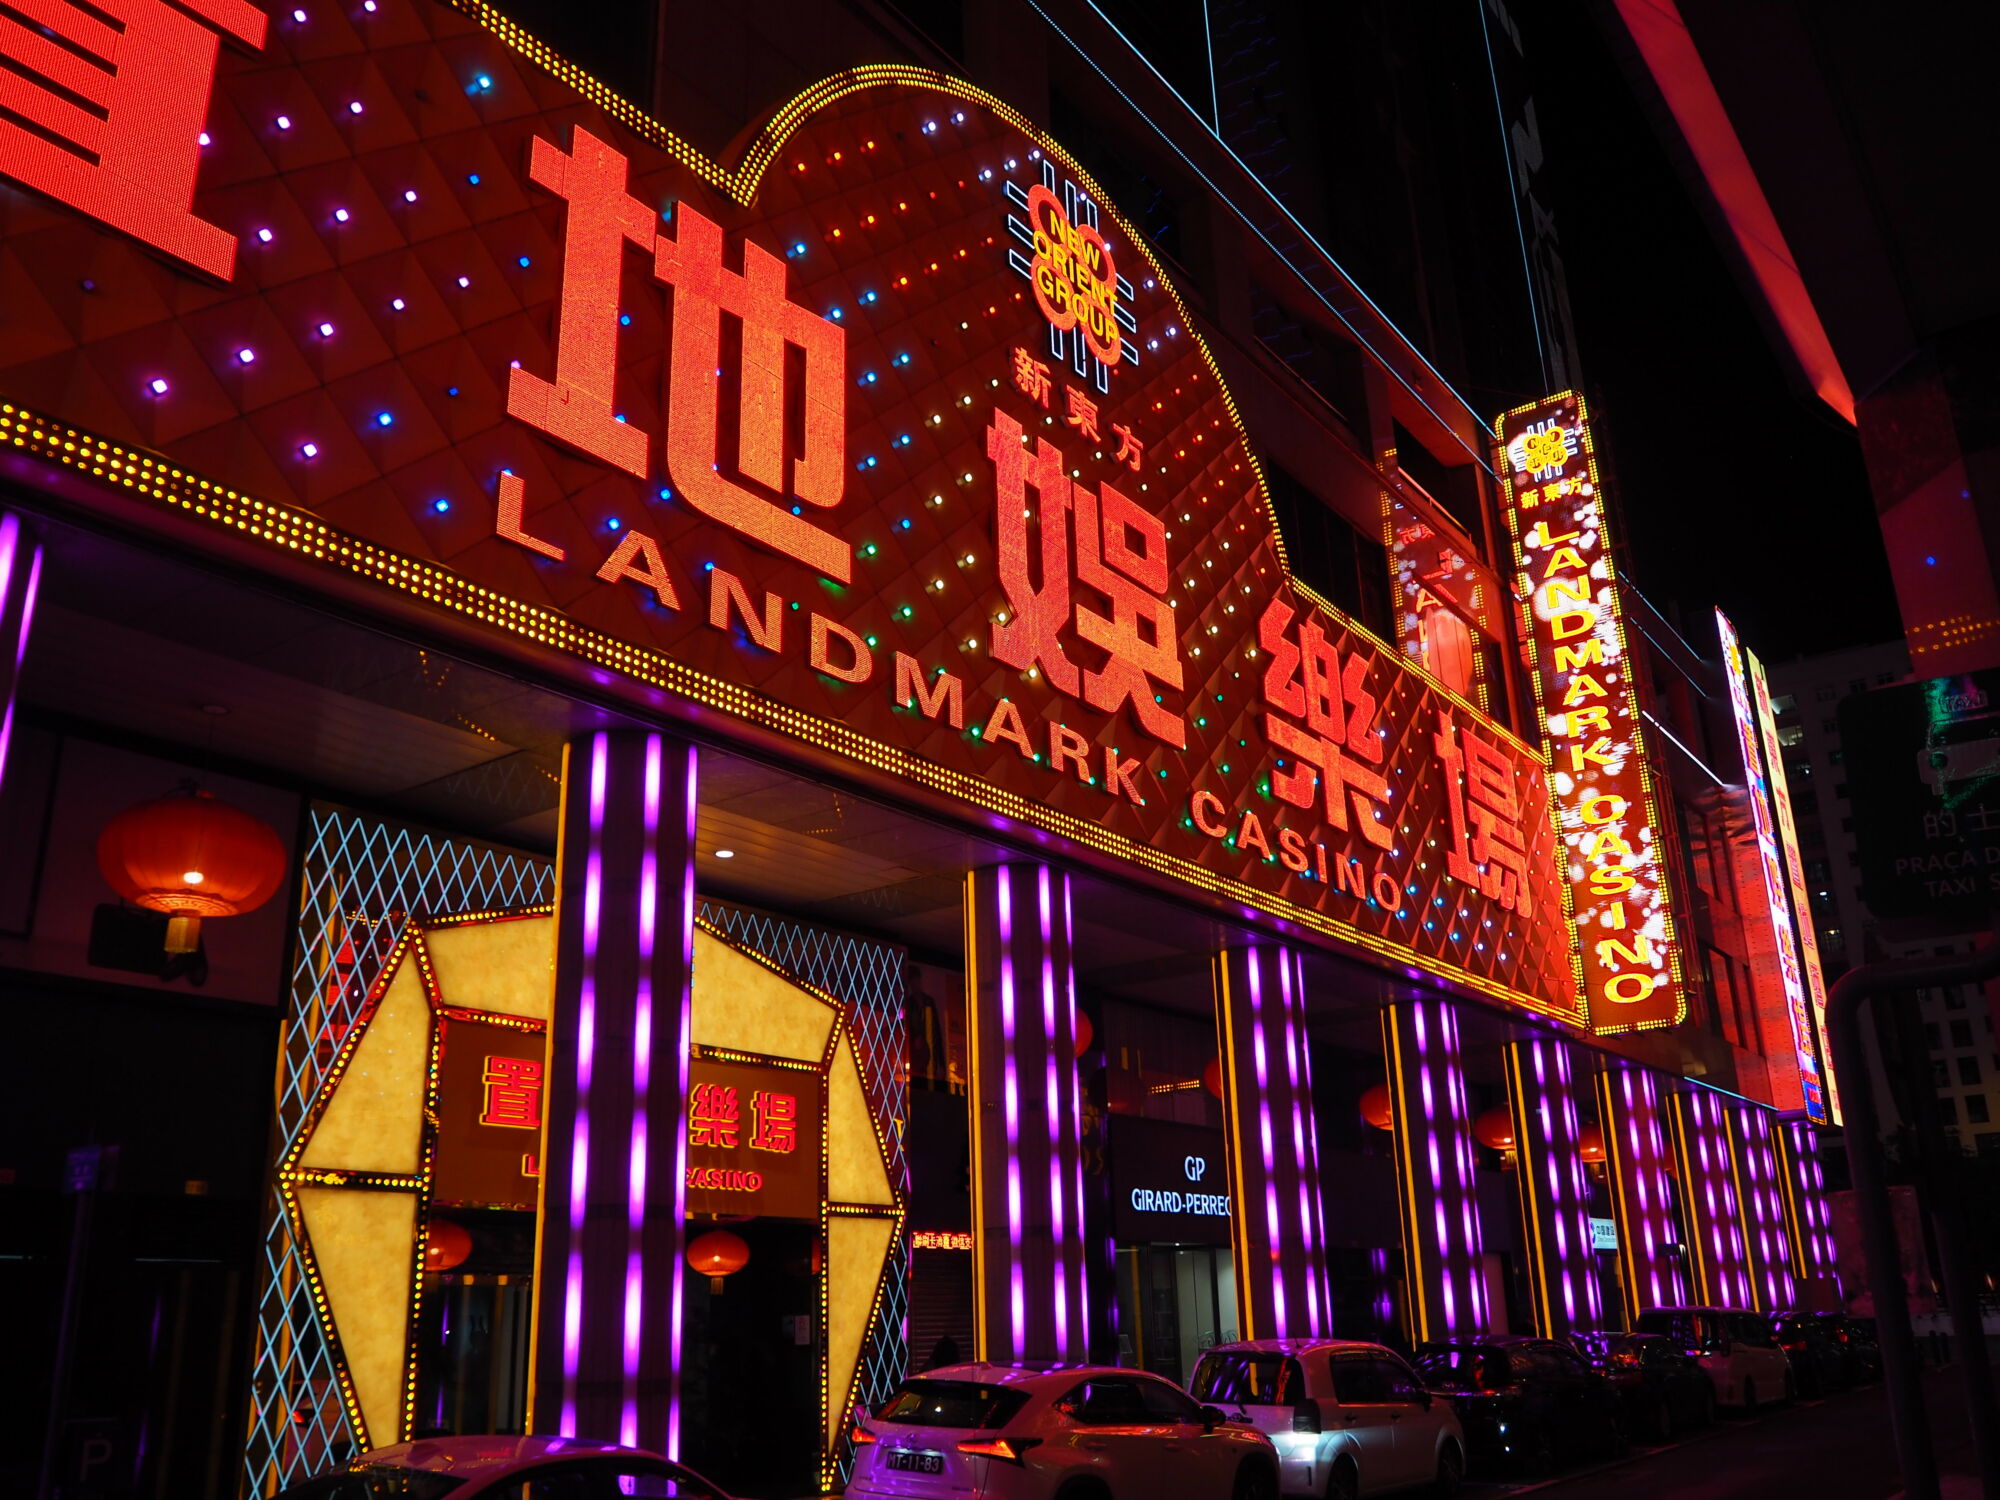 Landmark casino neon sign